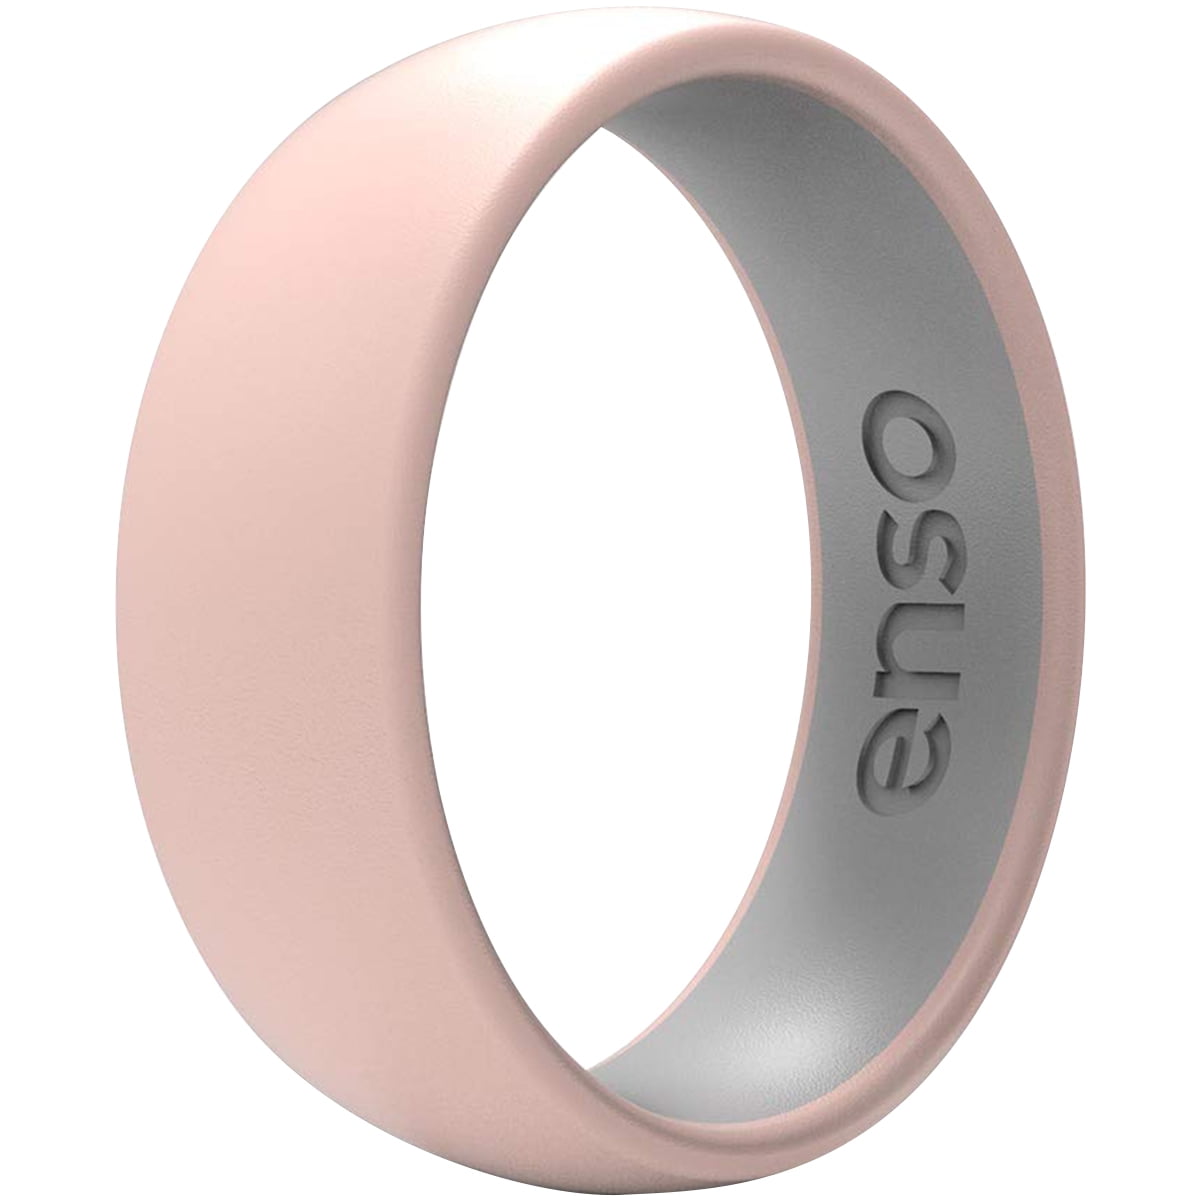 Enso Rings Dualtone Series Silicone Ring - Blazing Yellow/Obsidian - 3